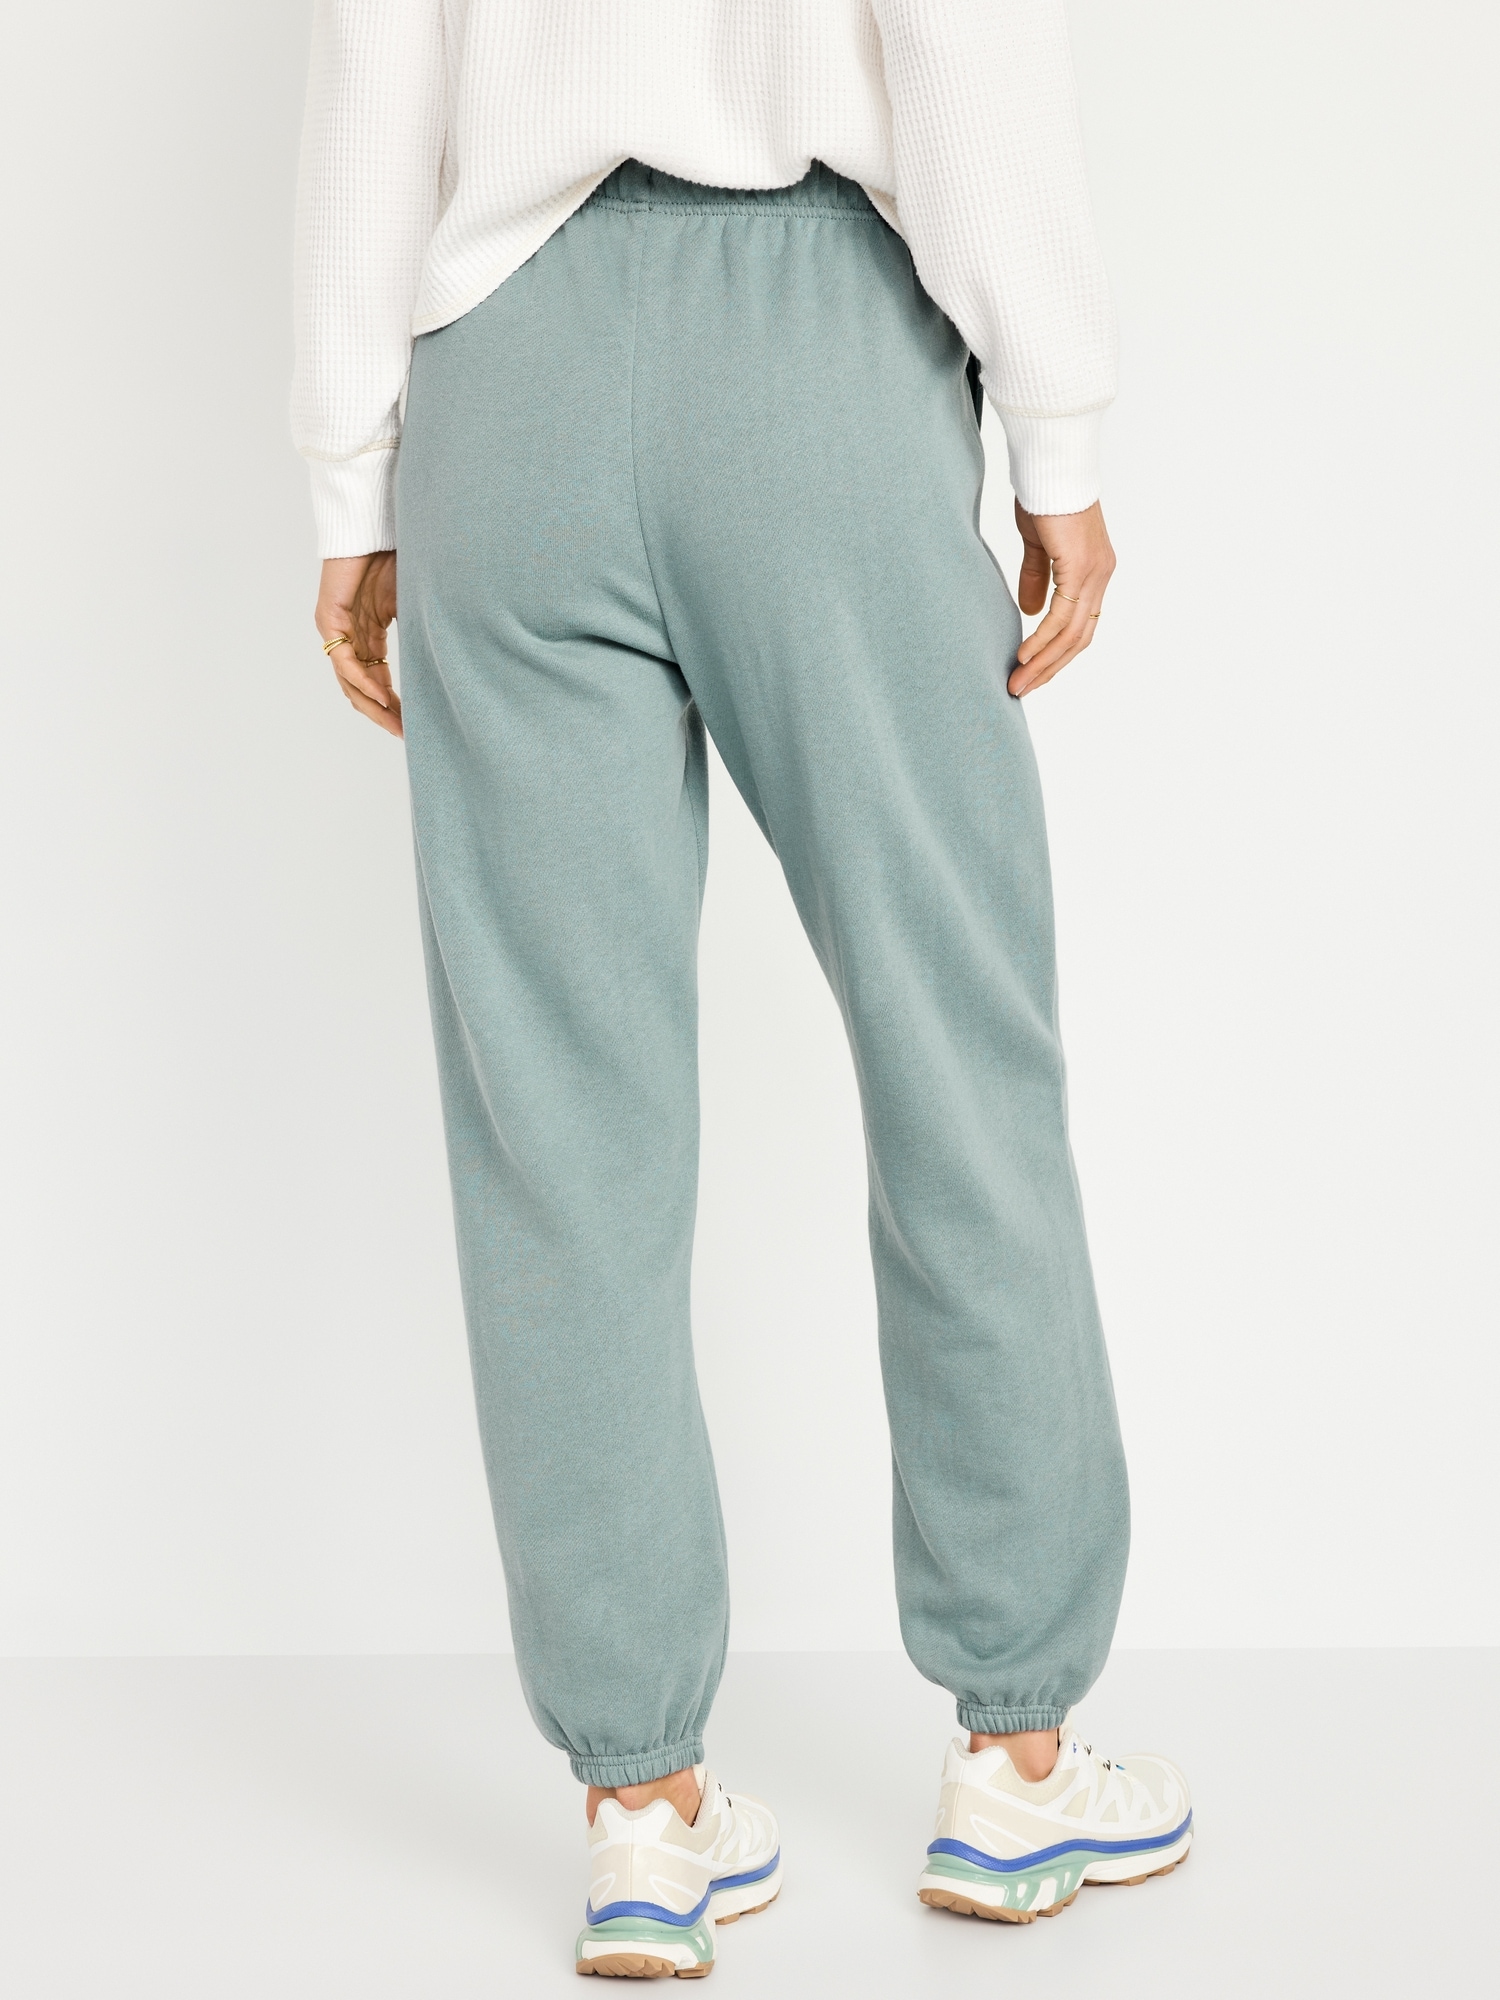  Women's Plus Size Super Soft Clinched Sweatpants (Grey